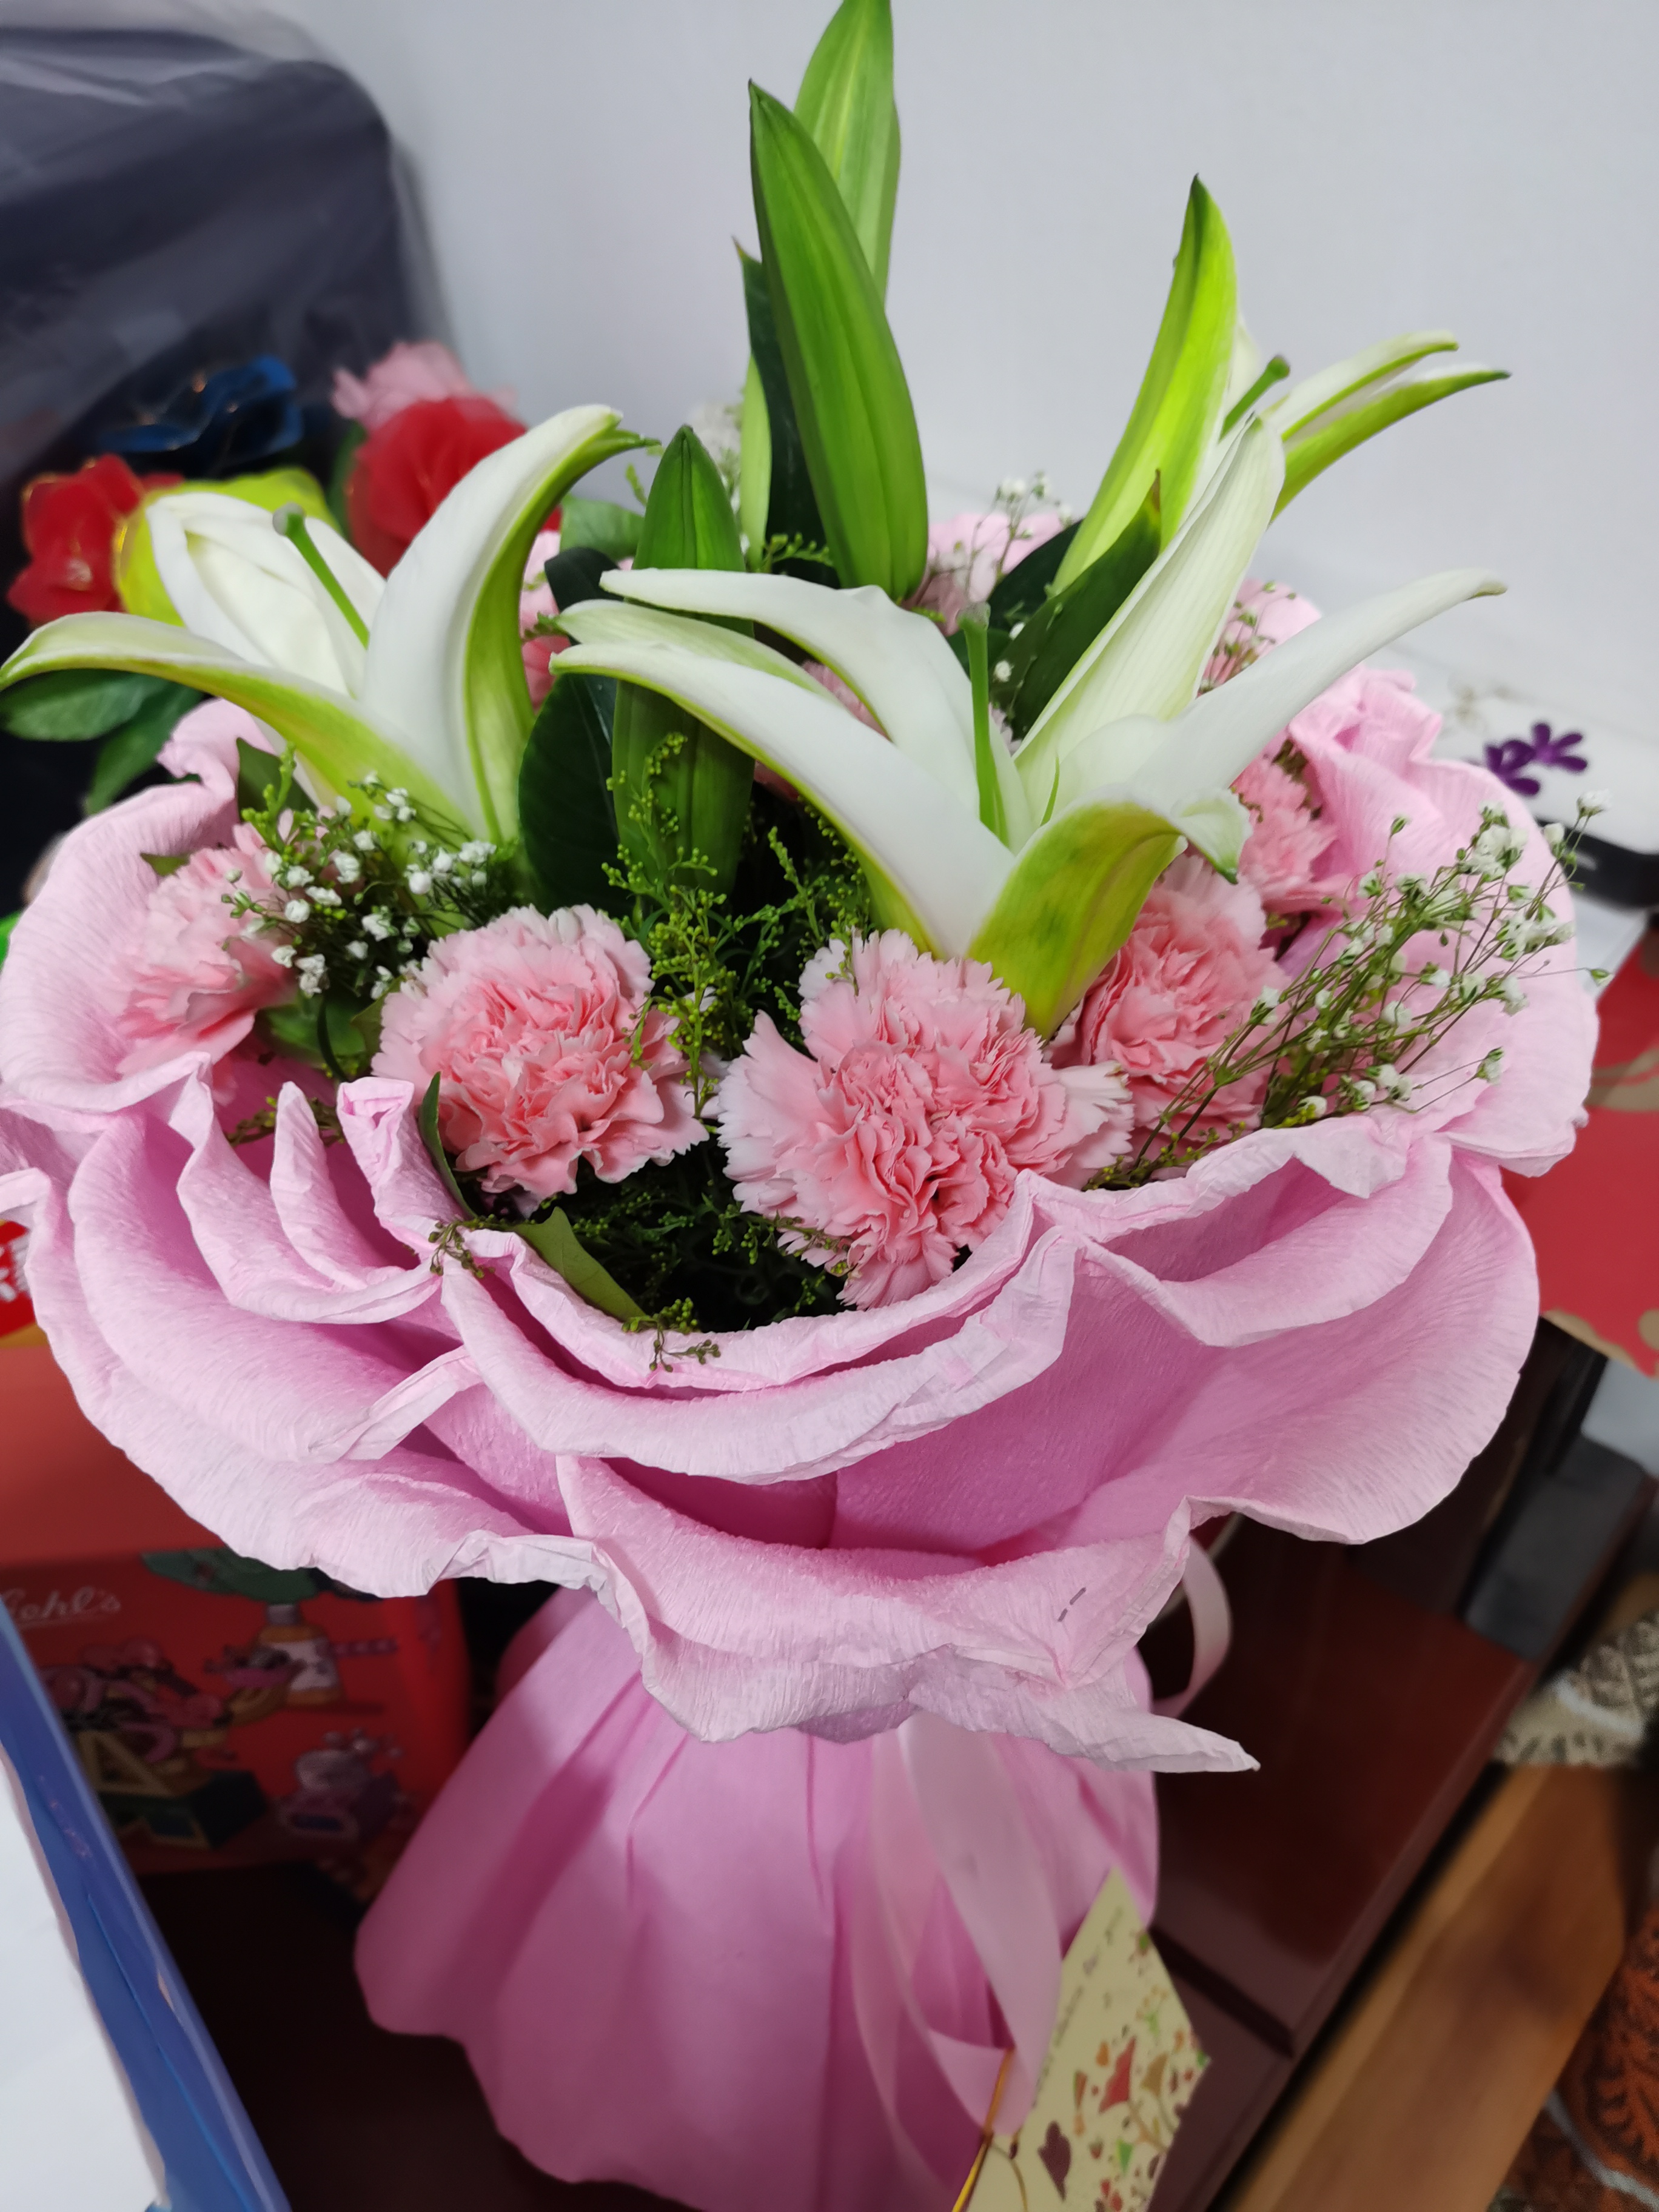 白百合和康乃馨华美的花束开花 库存照片. 图片 包括有 复制, 红色, 新鲜, 开花的, 礼品, 开花 - 104436588